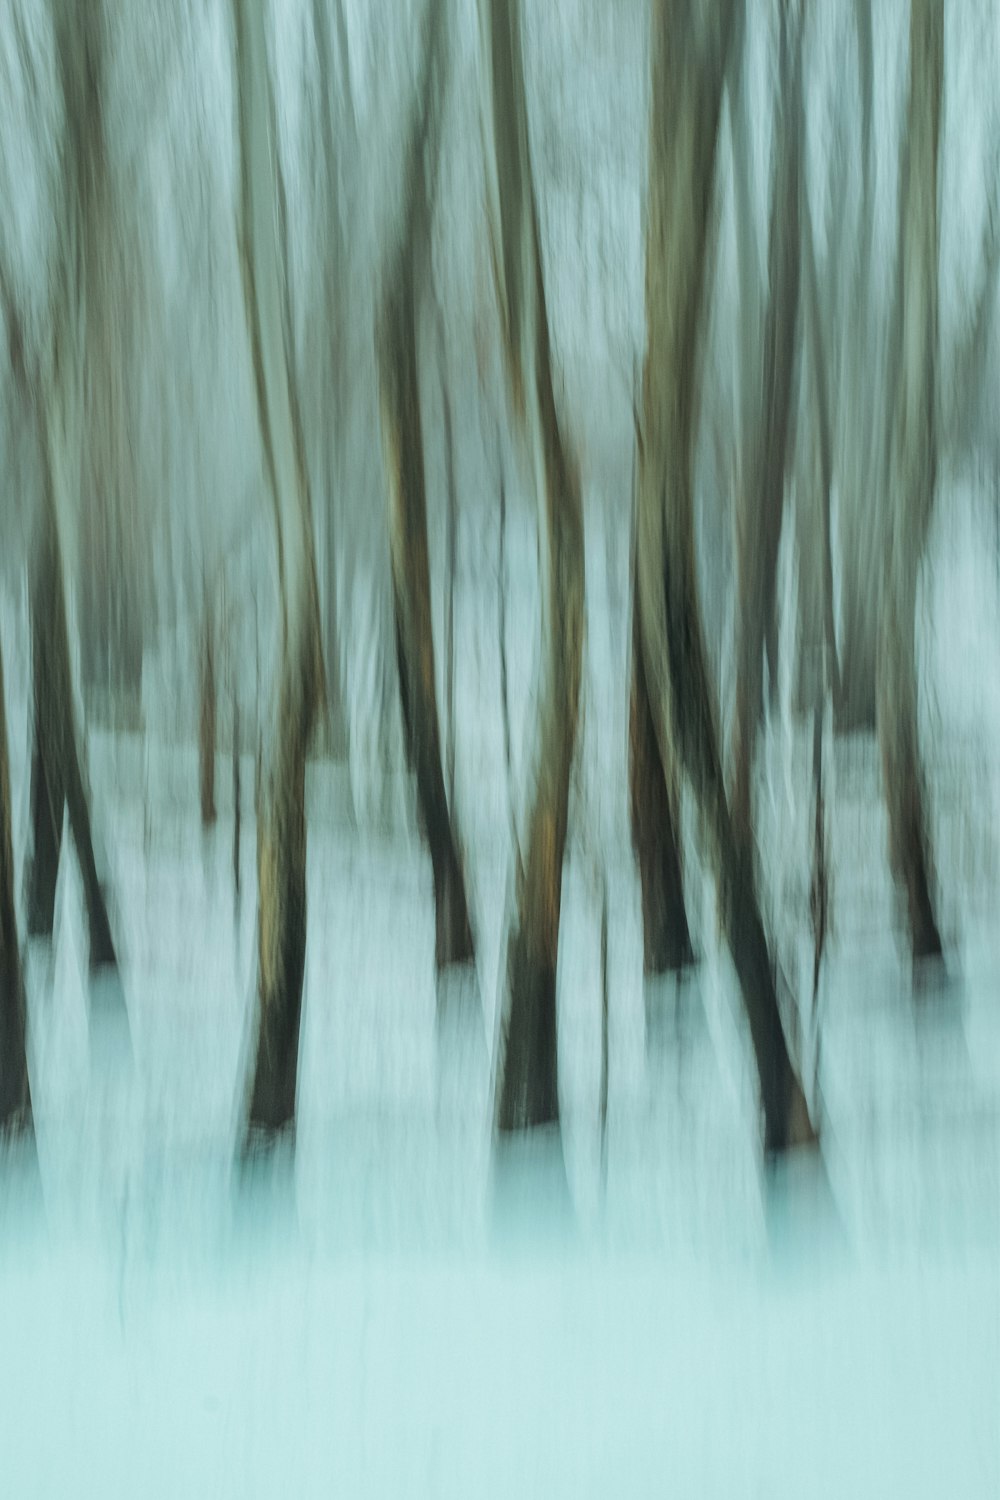 Une photo floue d’arbres dans la neige